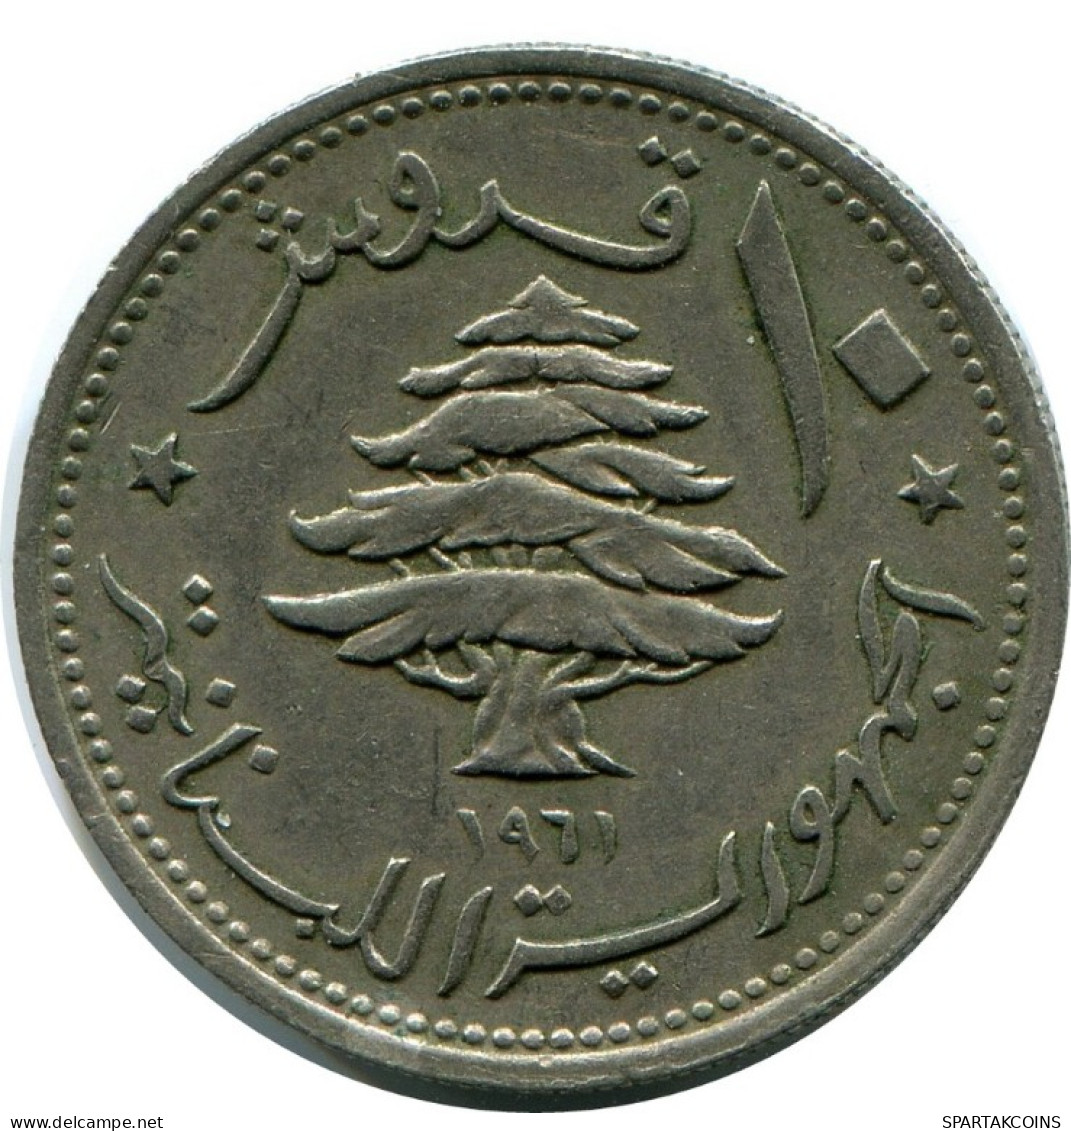 10 PIASTRES 1961 LEBANON Coin #AH859.U.A - Libano